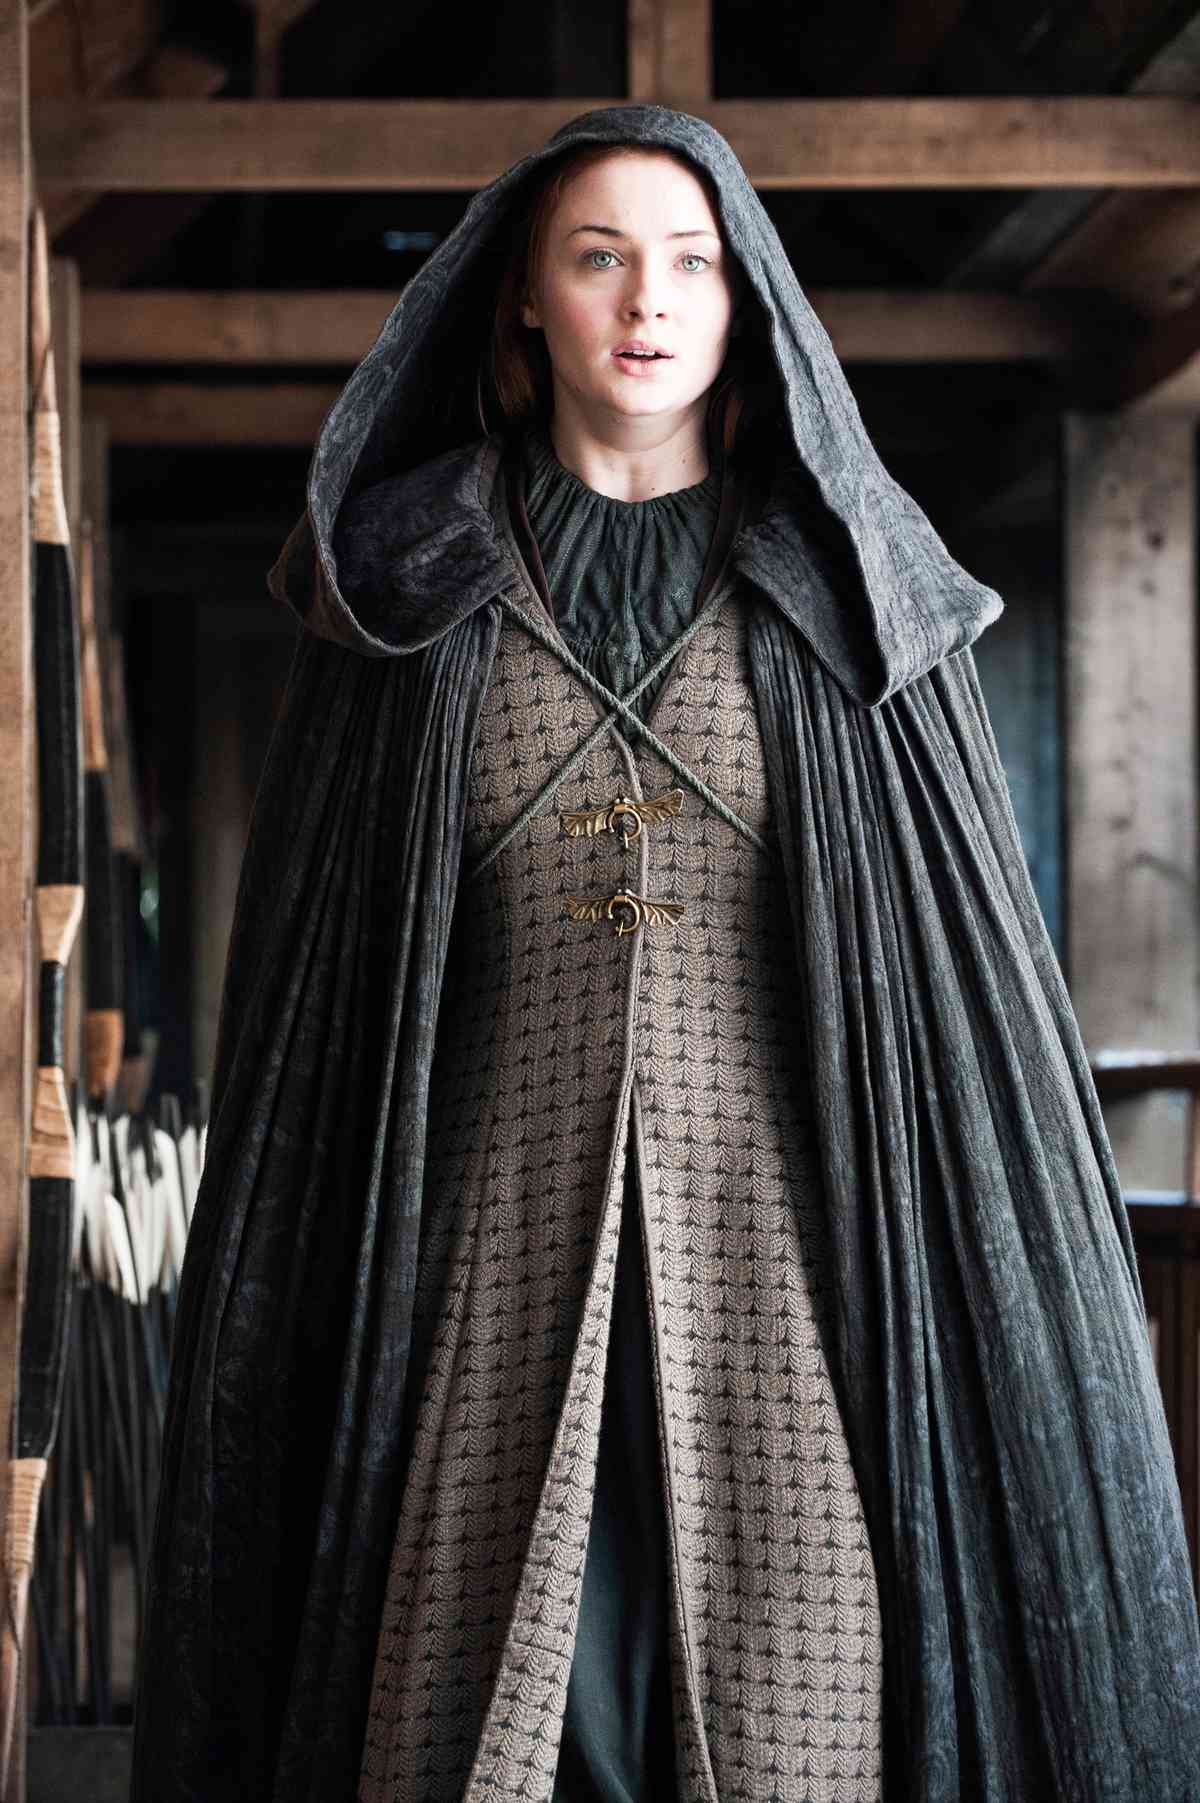 Sophie Turner - Game of Thrones - Lead